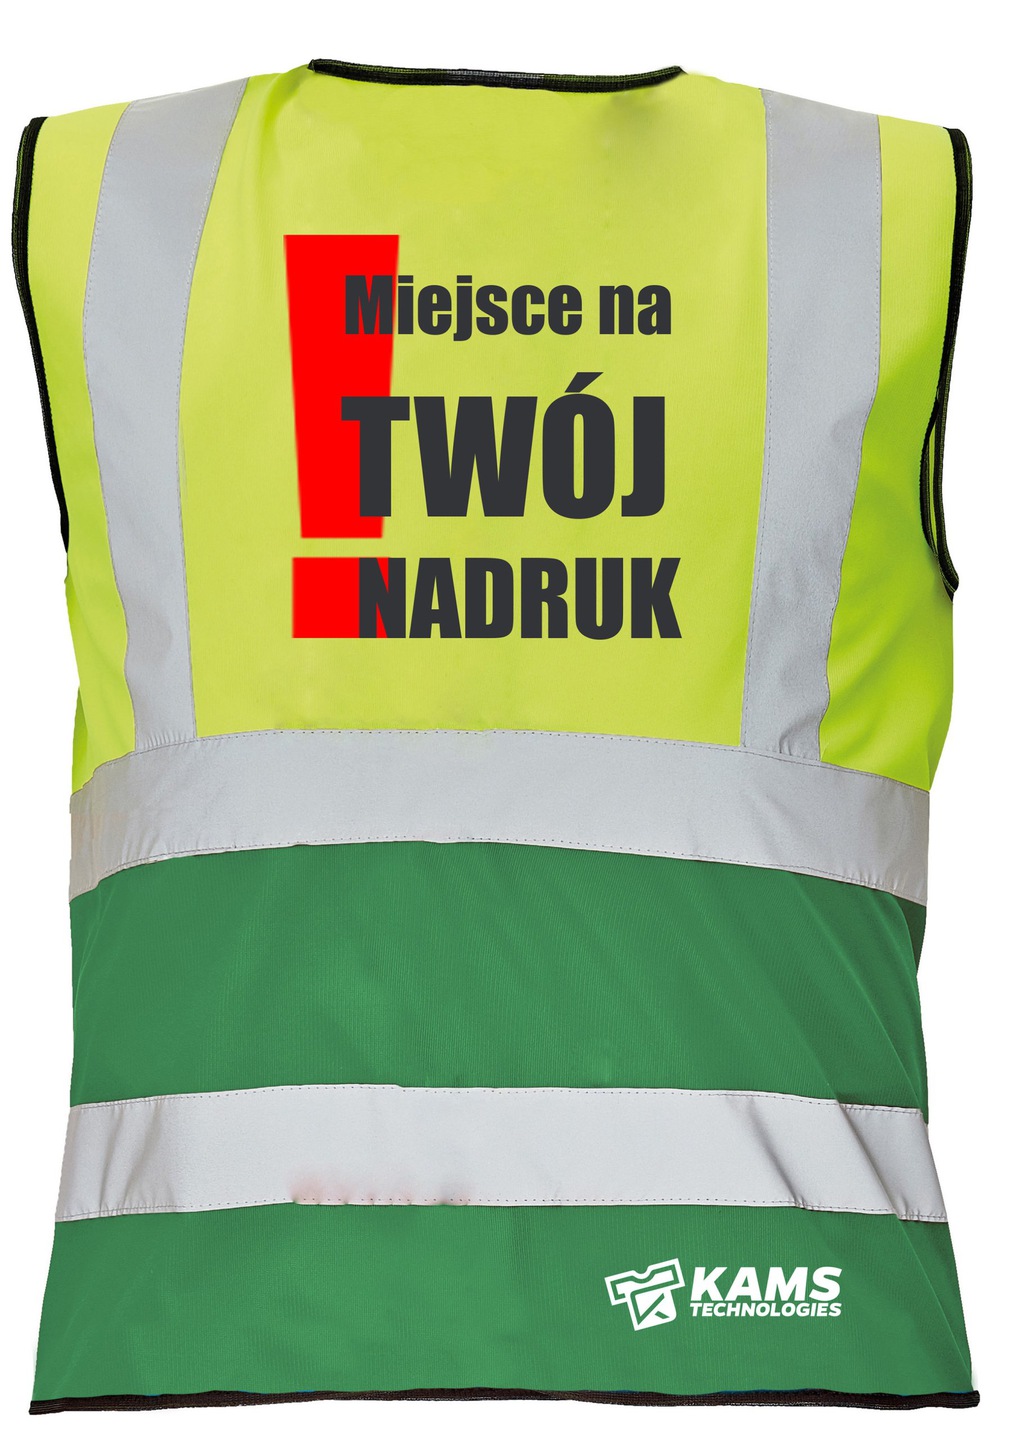 Kamizelka ostrzegawcza dwukolorowa z TWOIM NADRUKIEM, żółto/zielona